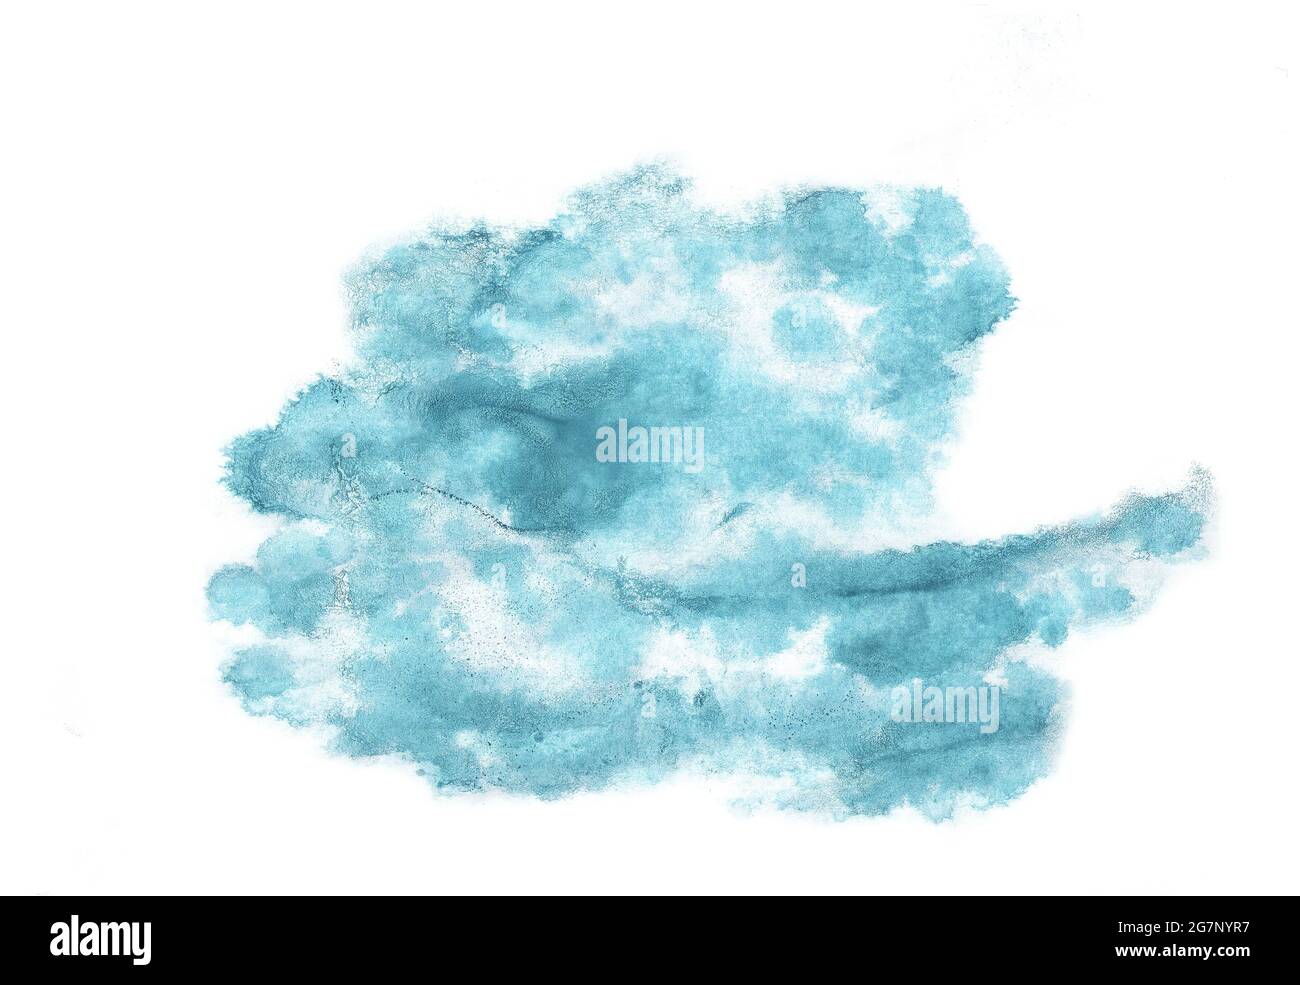 Bstract blaue Aquarell Wolke auf weißem Hintergrund. Stock Illustration für Poster, Postkarten, Banner und kreatives Design. Stockfoto